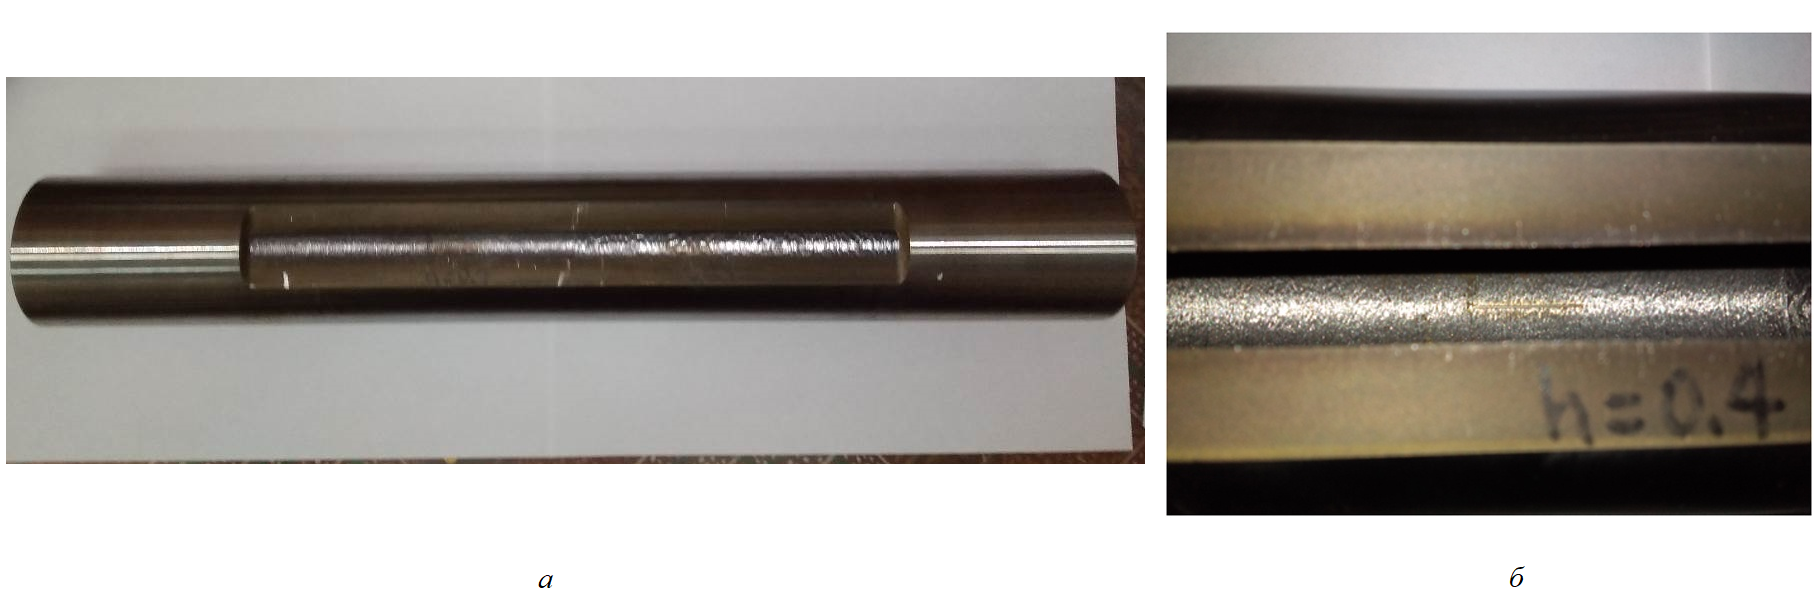 Внешний вид образцов труб НКТ и дефектов для исследований:а – патрубок трубы НКТ диаметром 73 мм с технологическим отверстием, предназначенным для нанесения дефектов внутренней поверхности; б – внешний вид дефекта глубиной 0,4 мм, нанесенного электроэрозионным способом на внутренней поверхности трубы НКТ толщиной стенки 5,5 мм